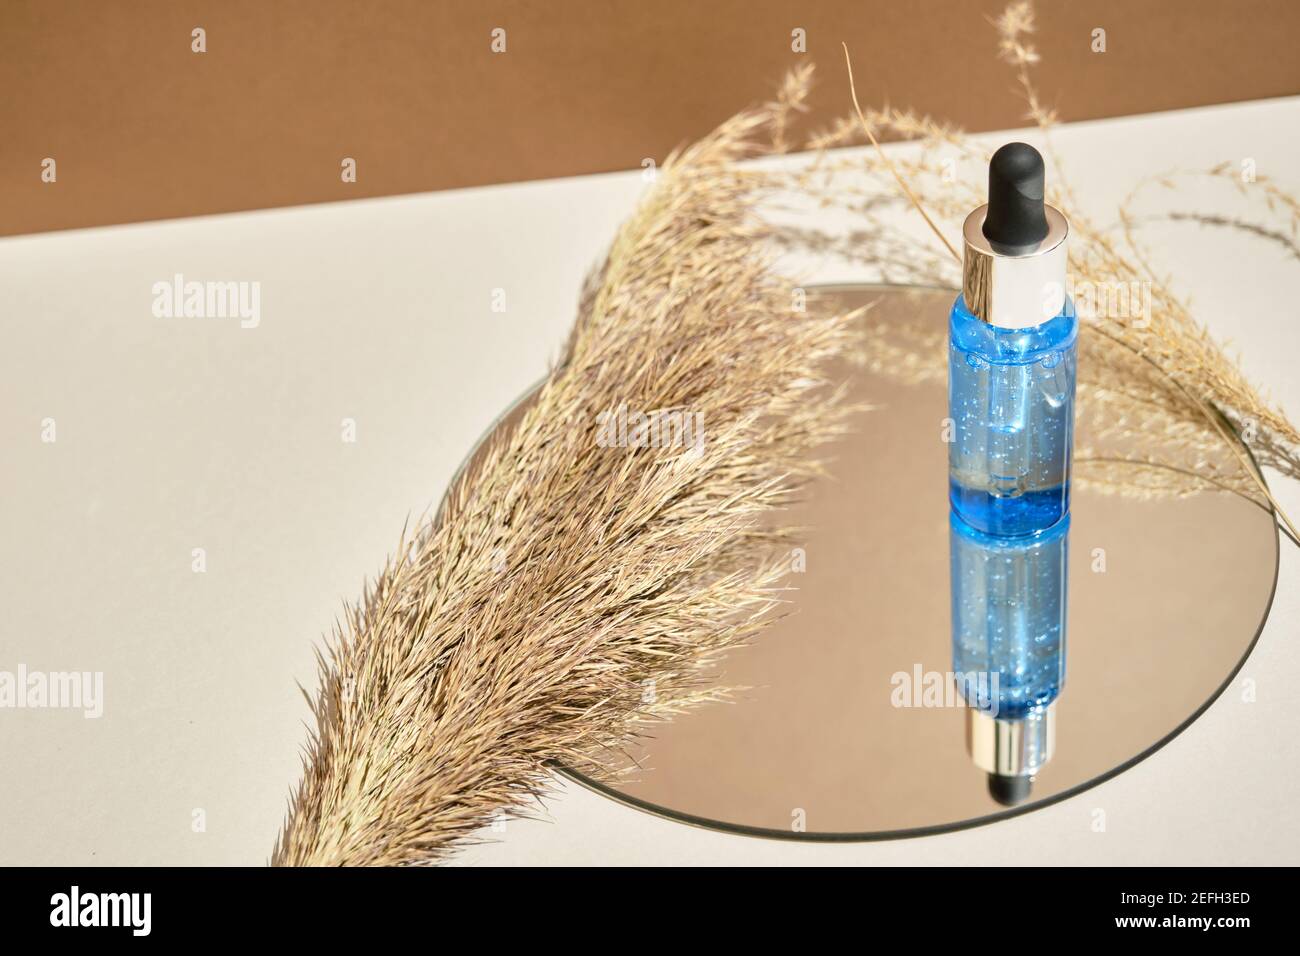 Una bottiglia di siero si trova su uno specchio rotondo con rami di fiori secchi. Stile Wabisabi, tonalità terra. Mockup di composizione cosmetica per la cura della pelle Foto Stock